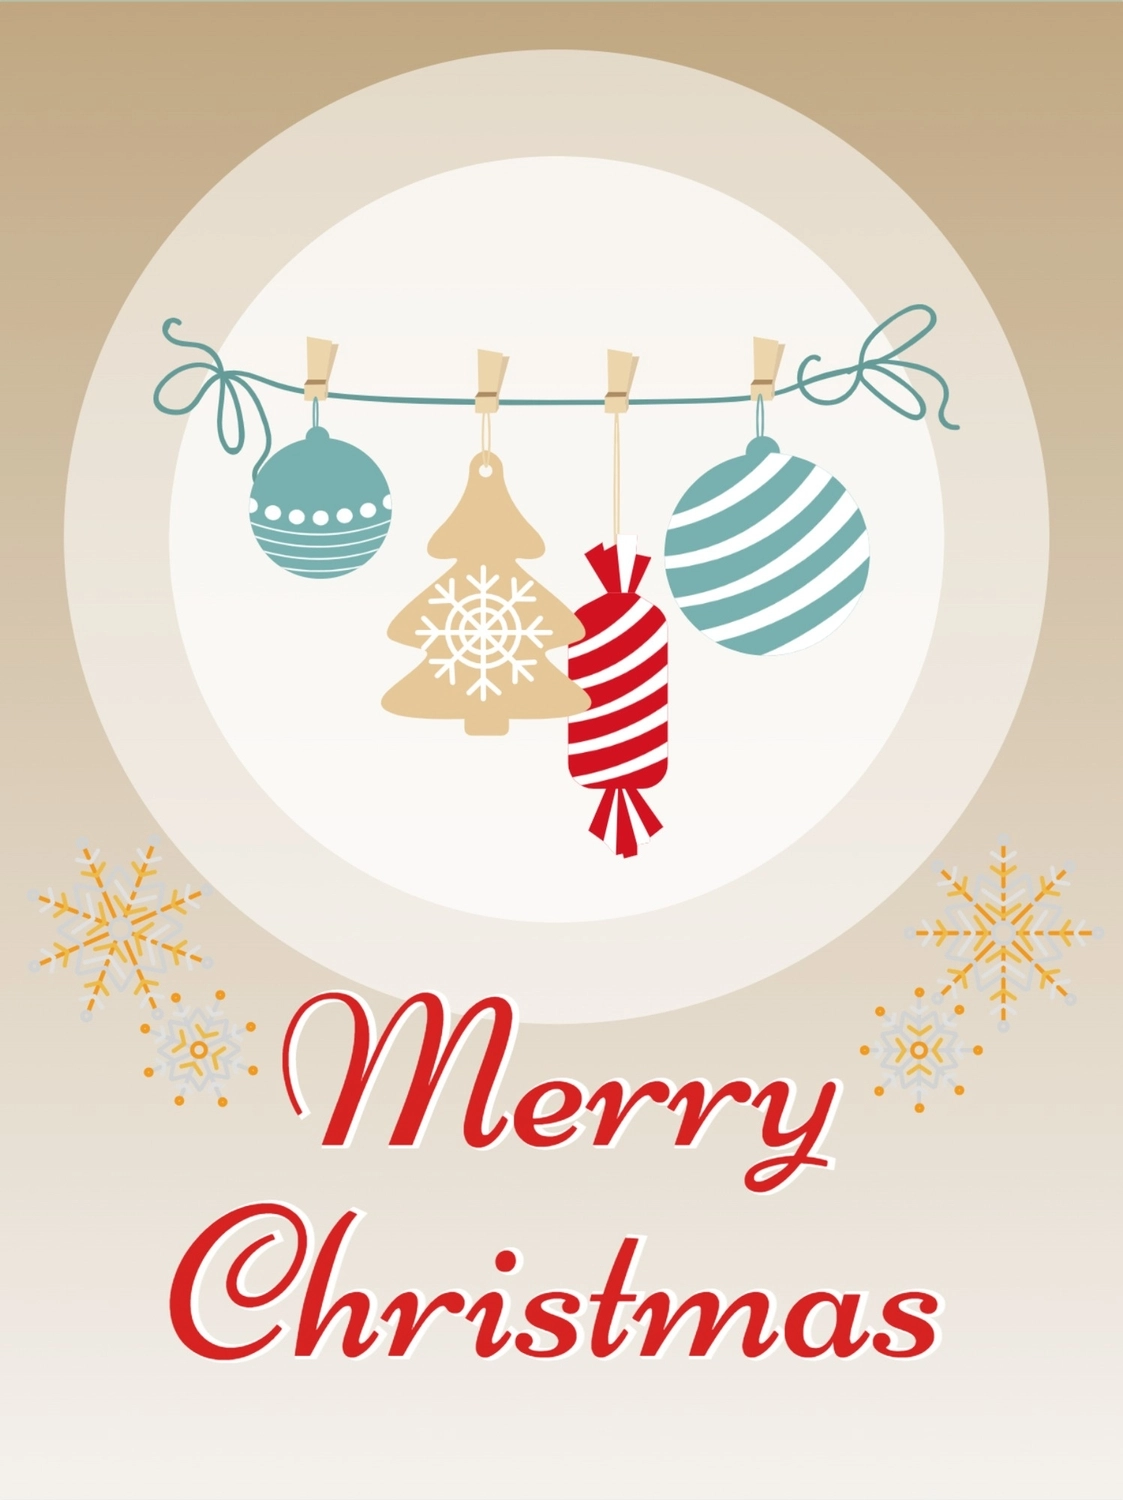 クリスマスの飾り, 矩形, クリスマスカード, ノルディック, メッセージカードテンプレート